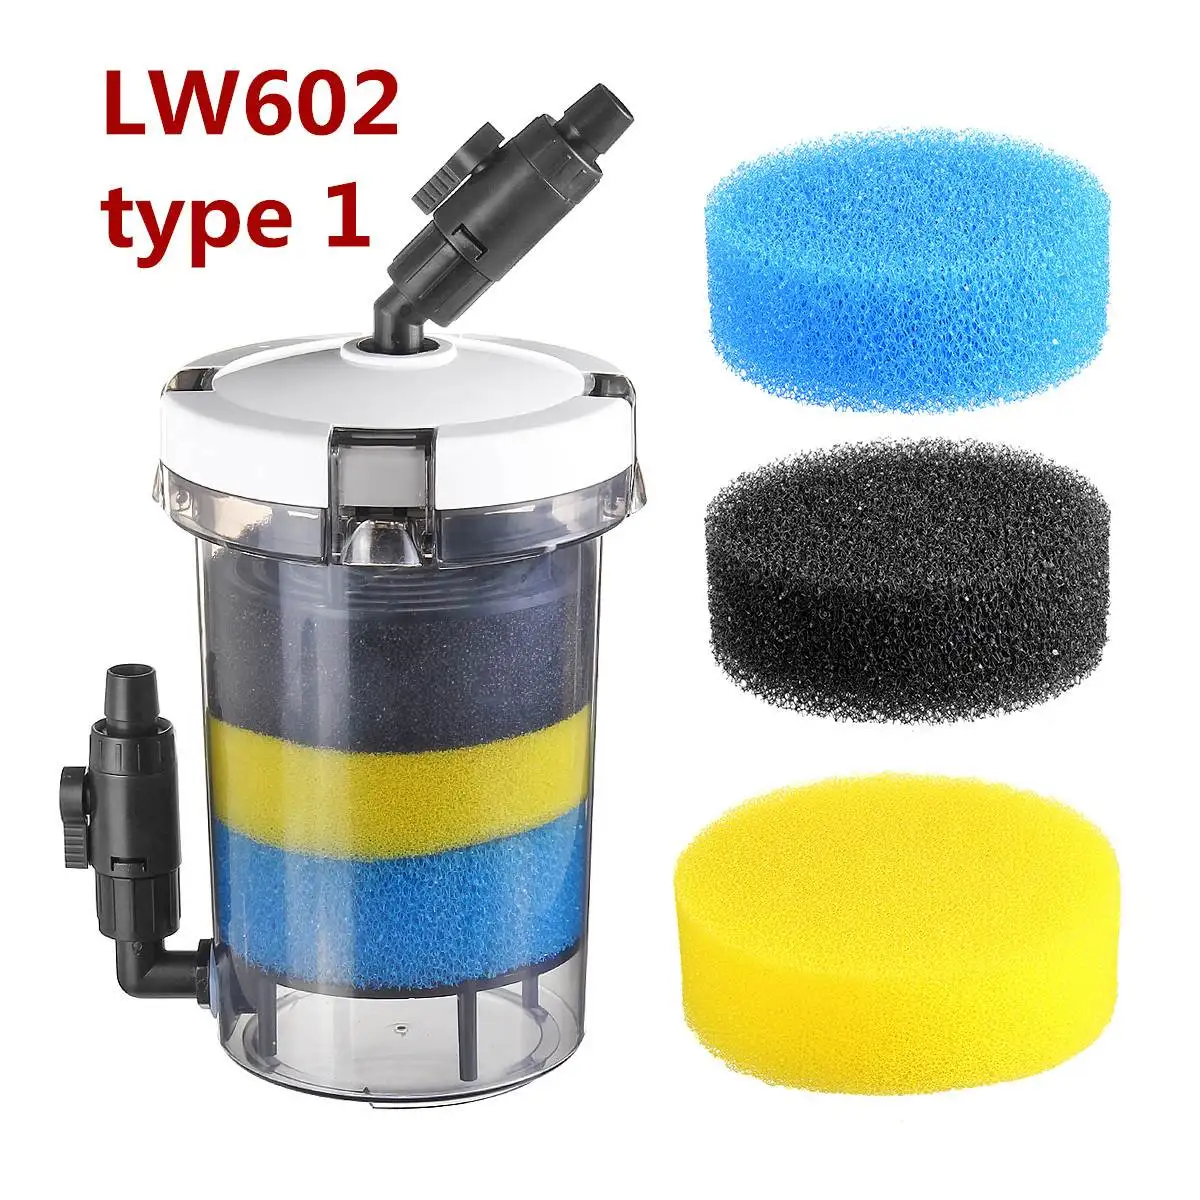 15W 220 V-240 V аквариум фильтр ультра-тихий внешний аквариумный фильтр ведро аквариум фильтр насоса LW602 LW603 w/Губка аксессуары - Цвет: LW602 type 1